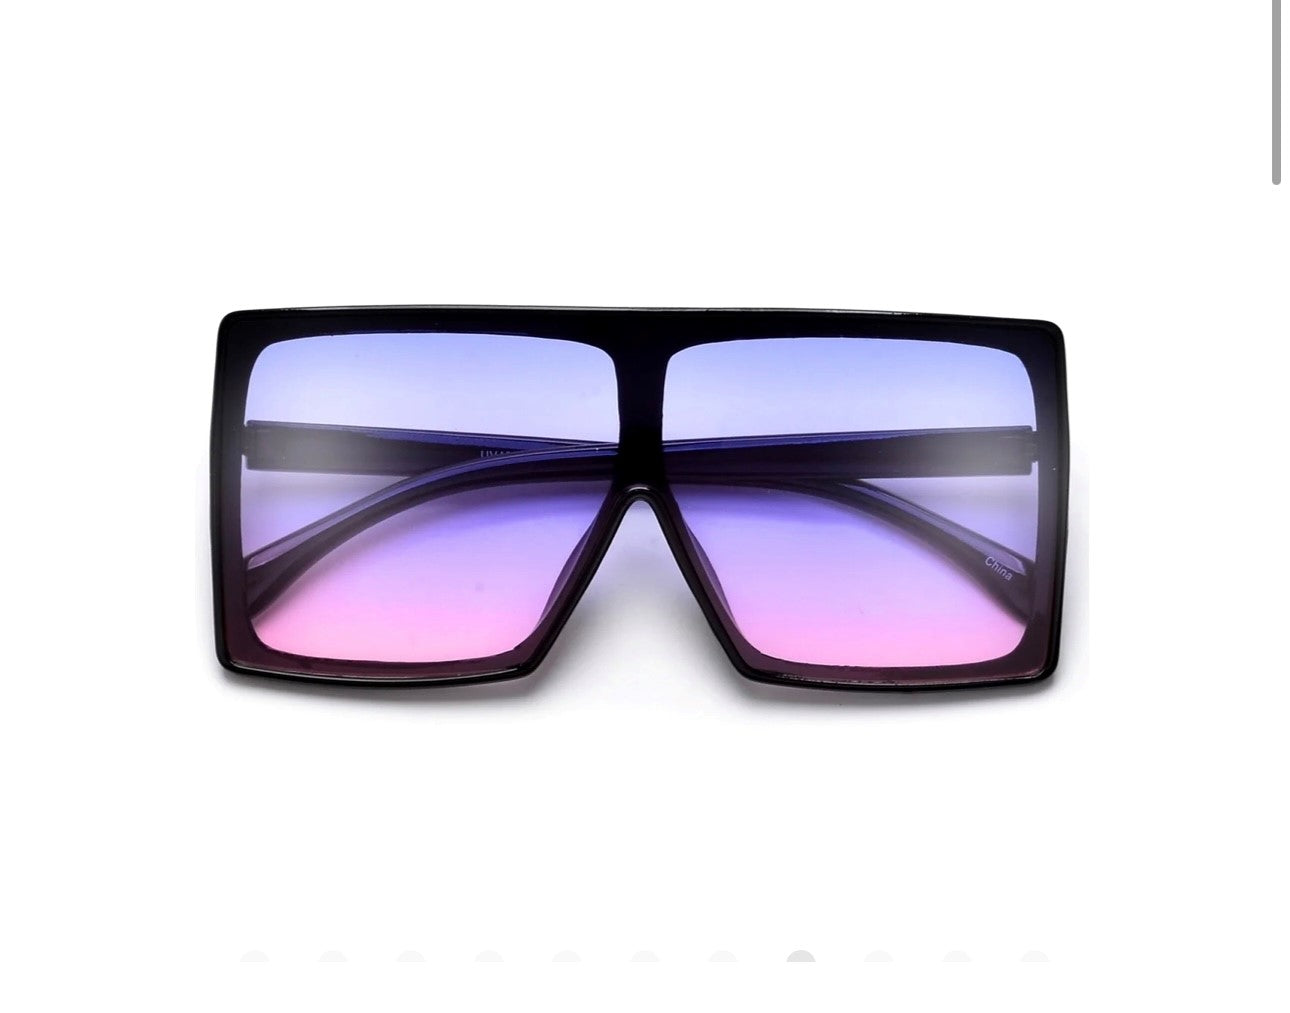 Oversized Bold Squared Off Visor Inspired Sunglasses